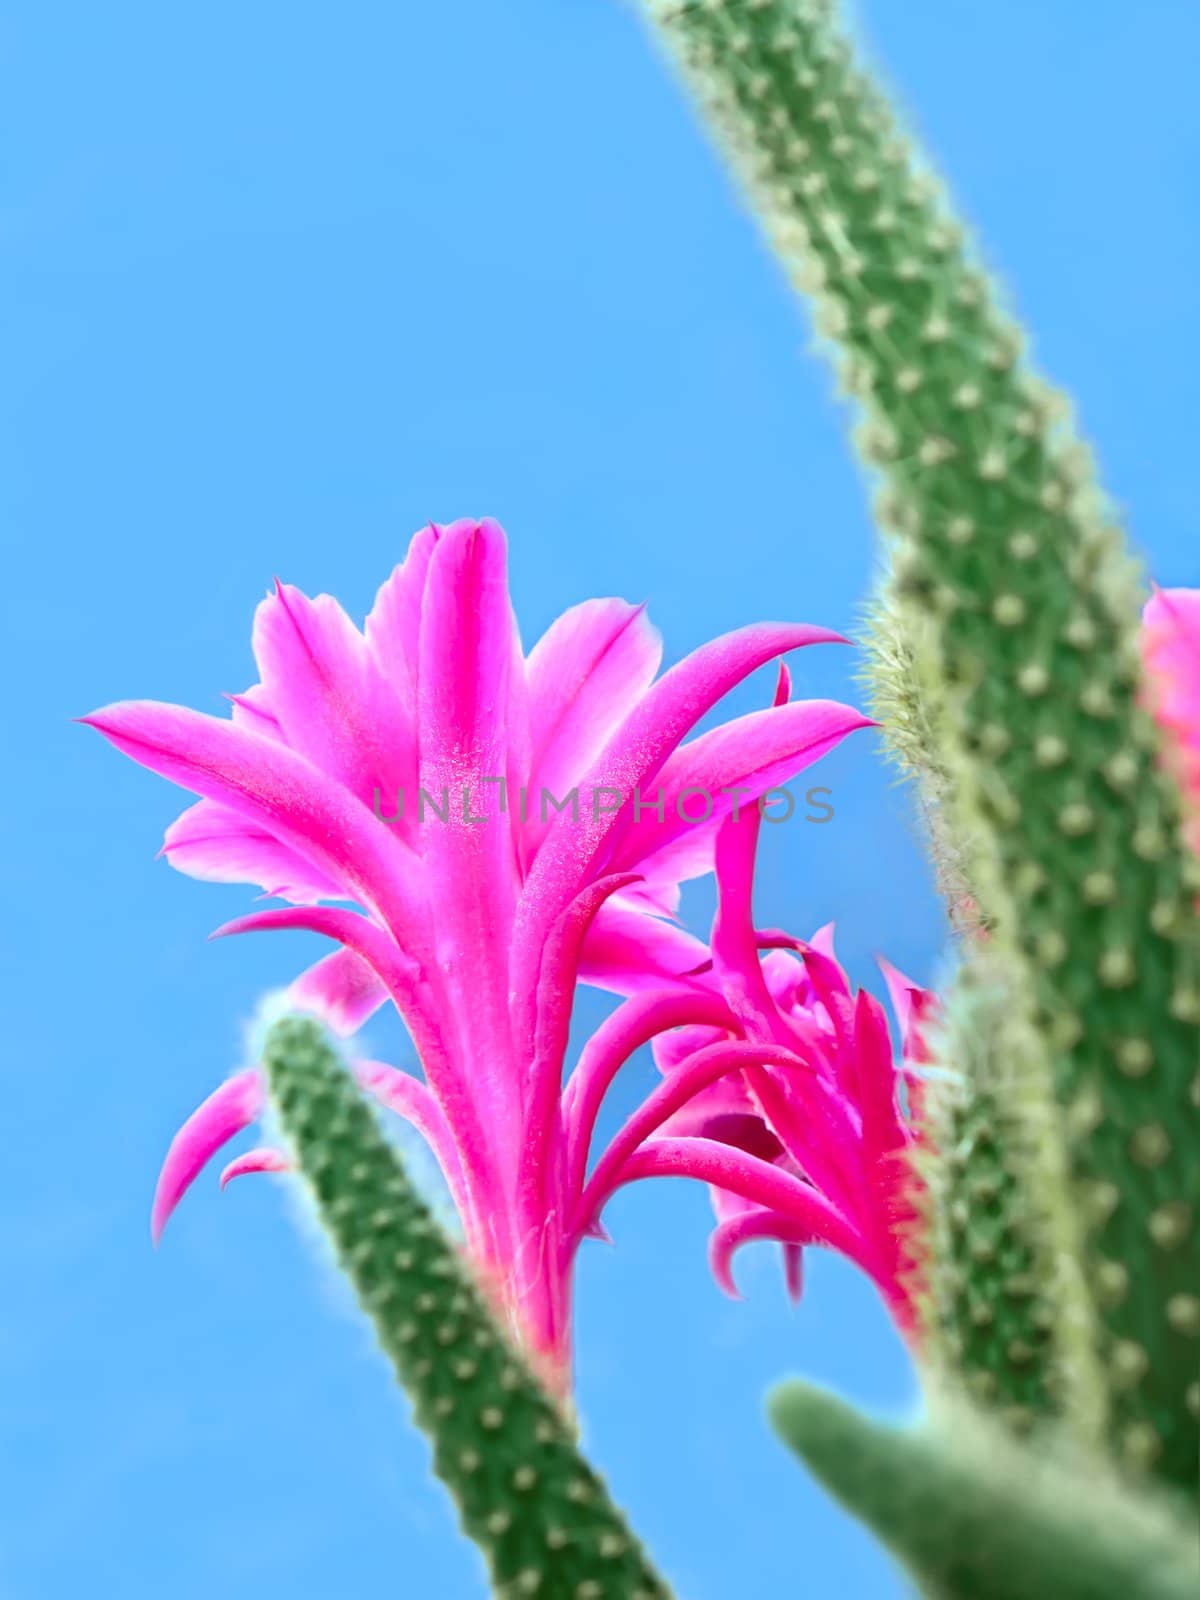 Cactus flowers by qiiip